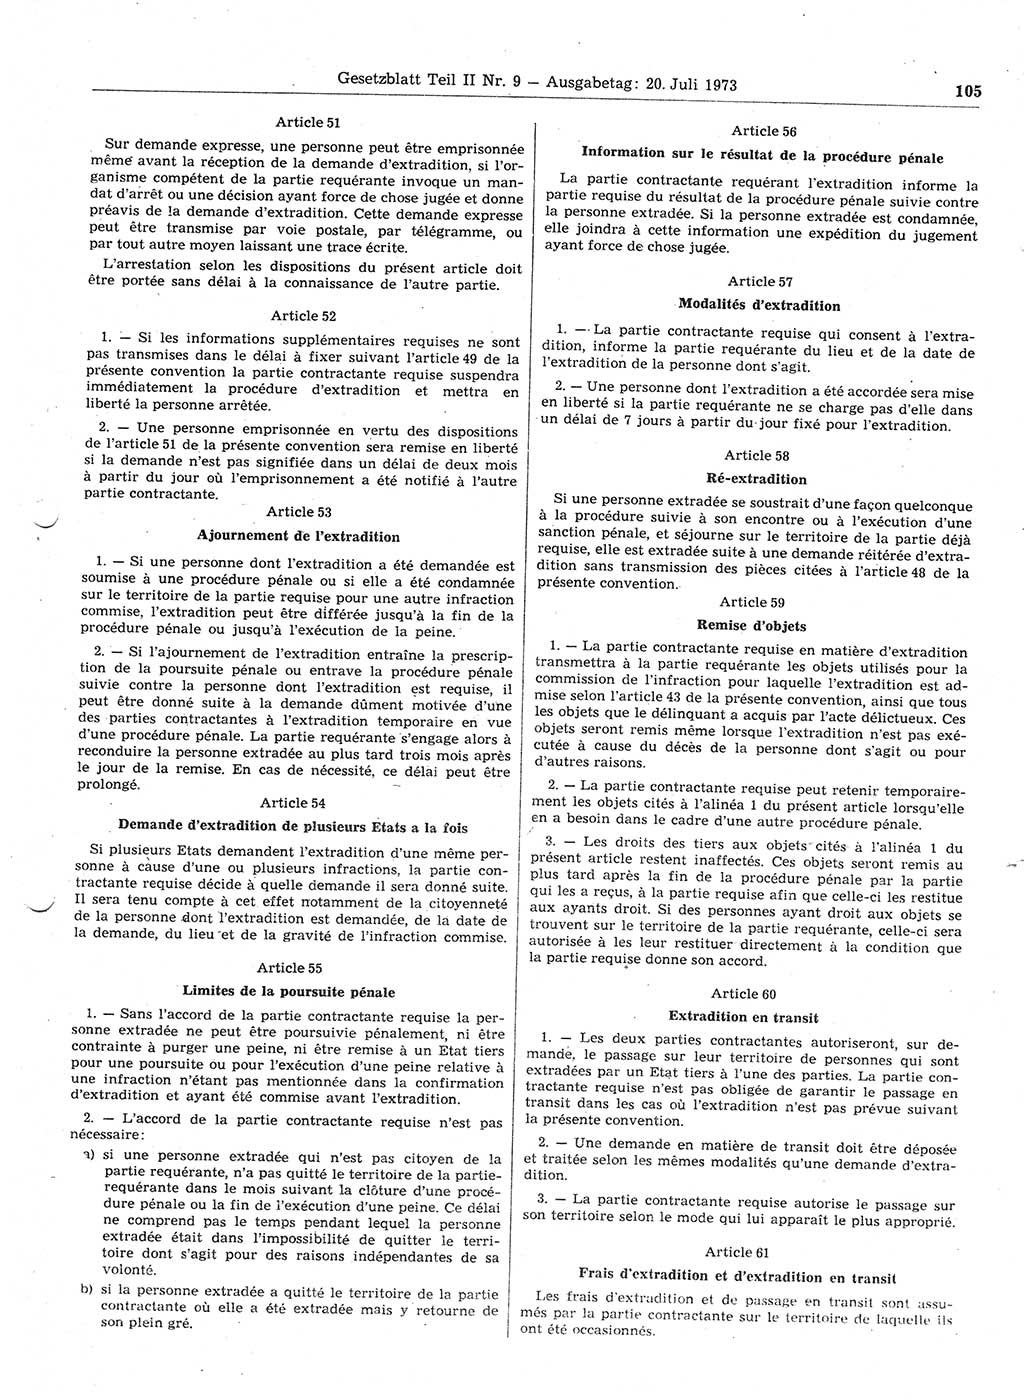 Gesetzblatt (GBl.) der Deutschen Demokratischen Republik (DDR) Teil ⅠⅠ 1973, Seite 105 (GBl. DDR ⅠⅠ 1973, S. 105)